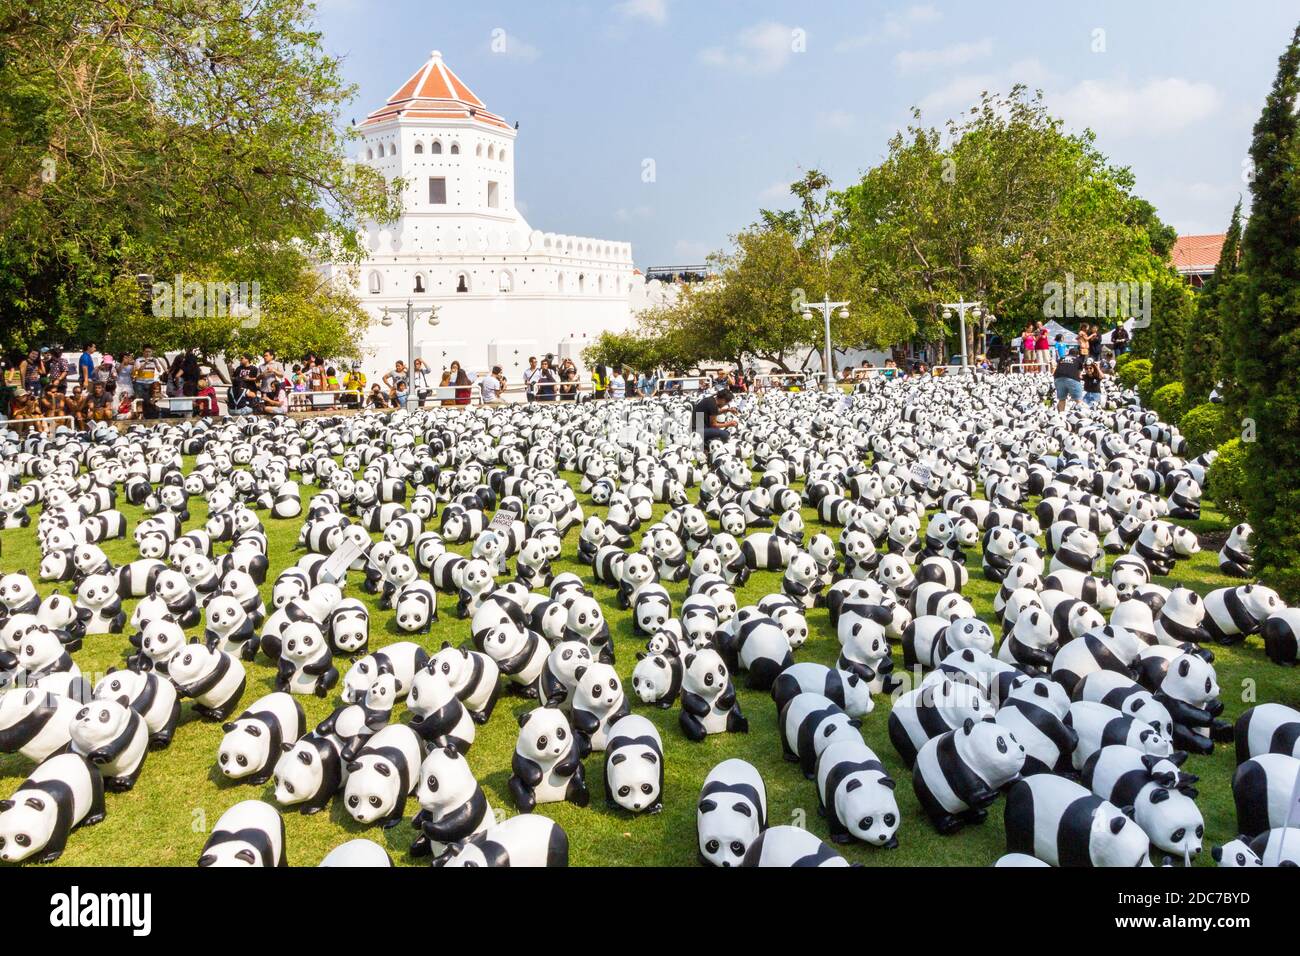 L'installation artistique de Pandas des années 1600 par Paulo Grangeon à Bangkok, en Thaïlande Banque D'Images